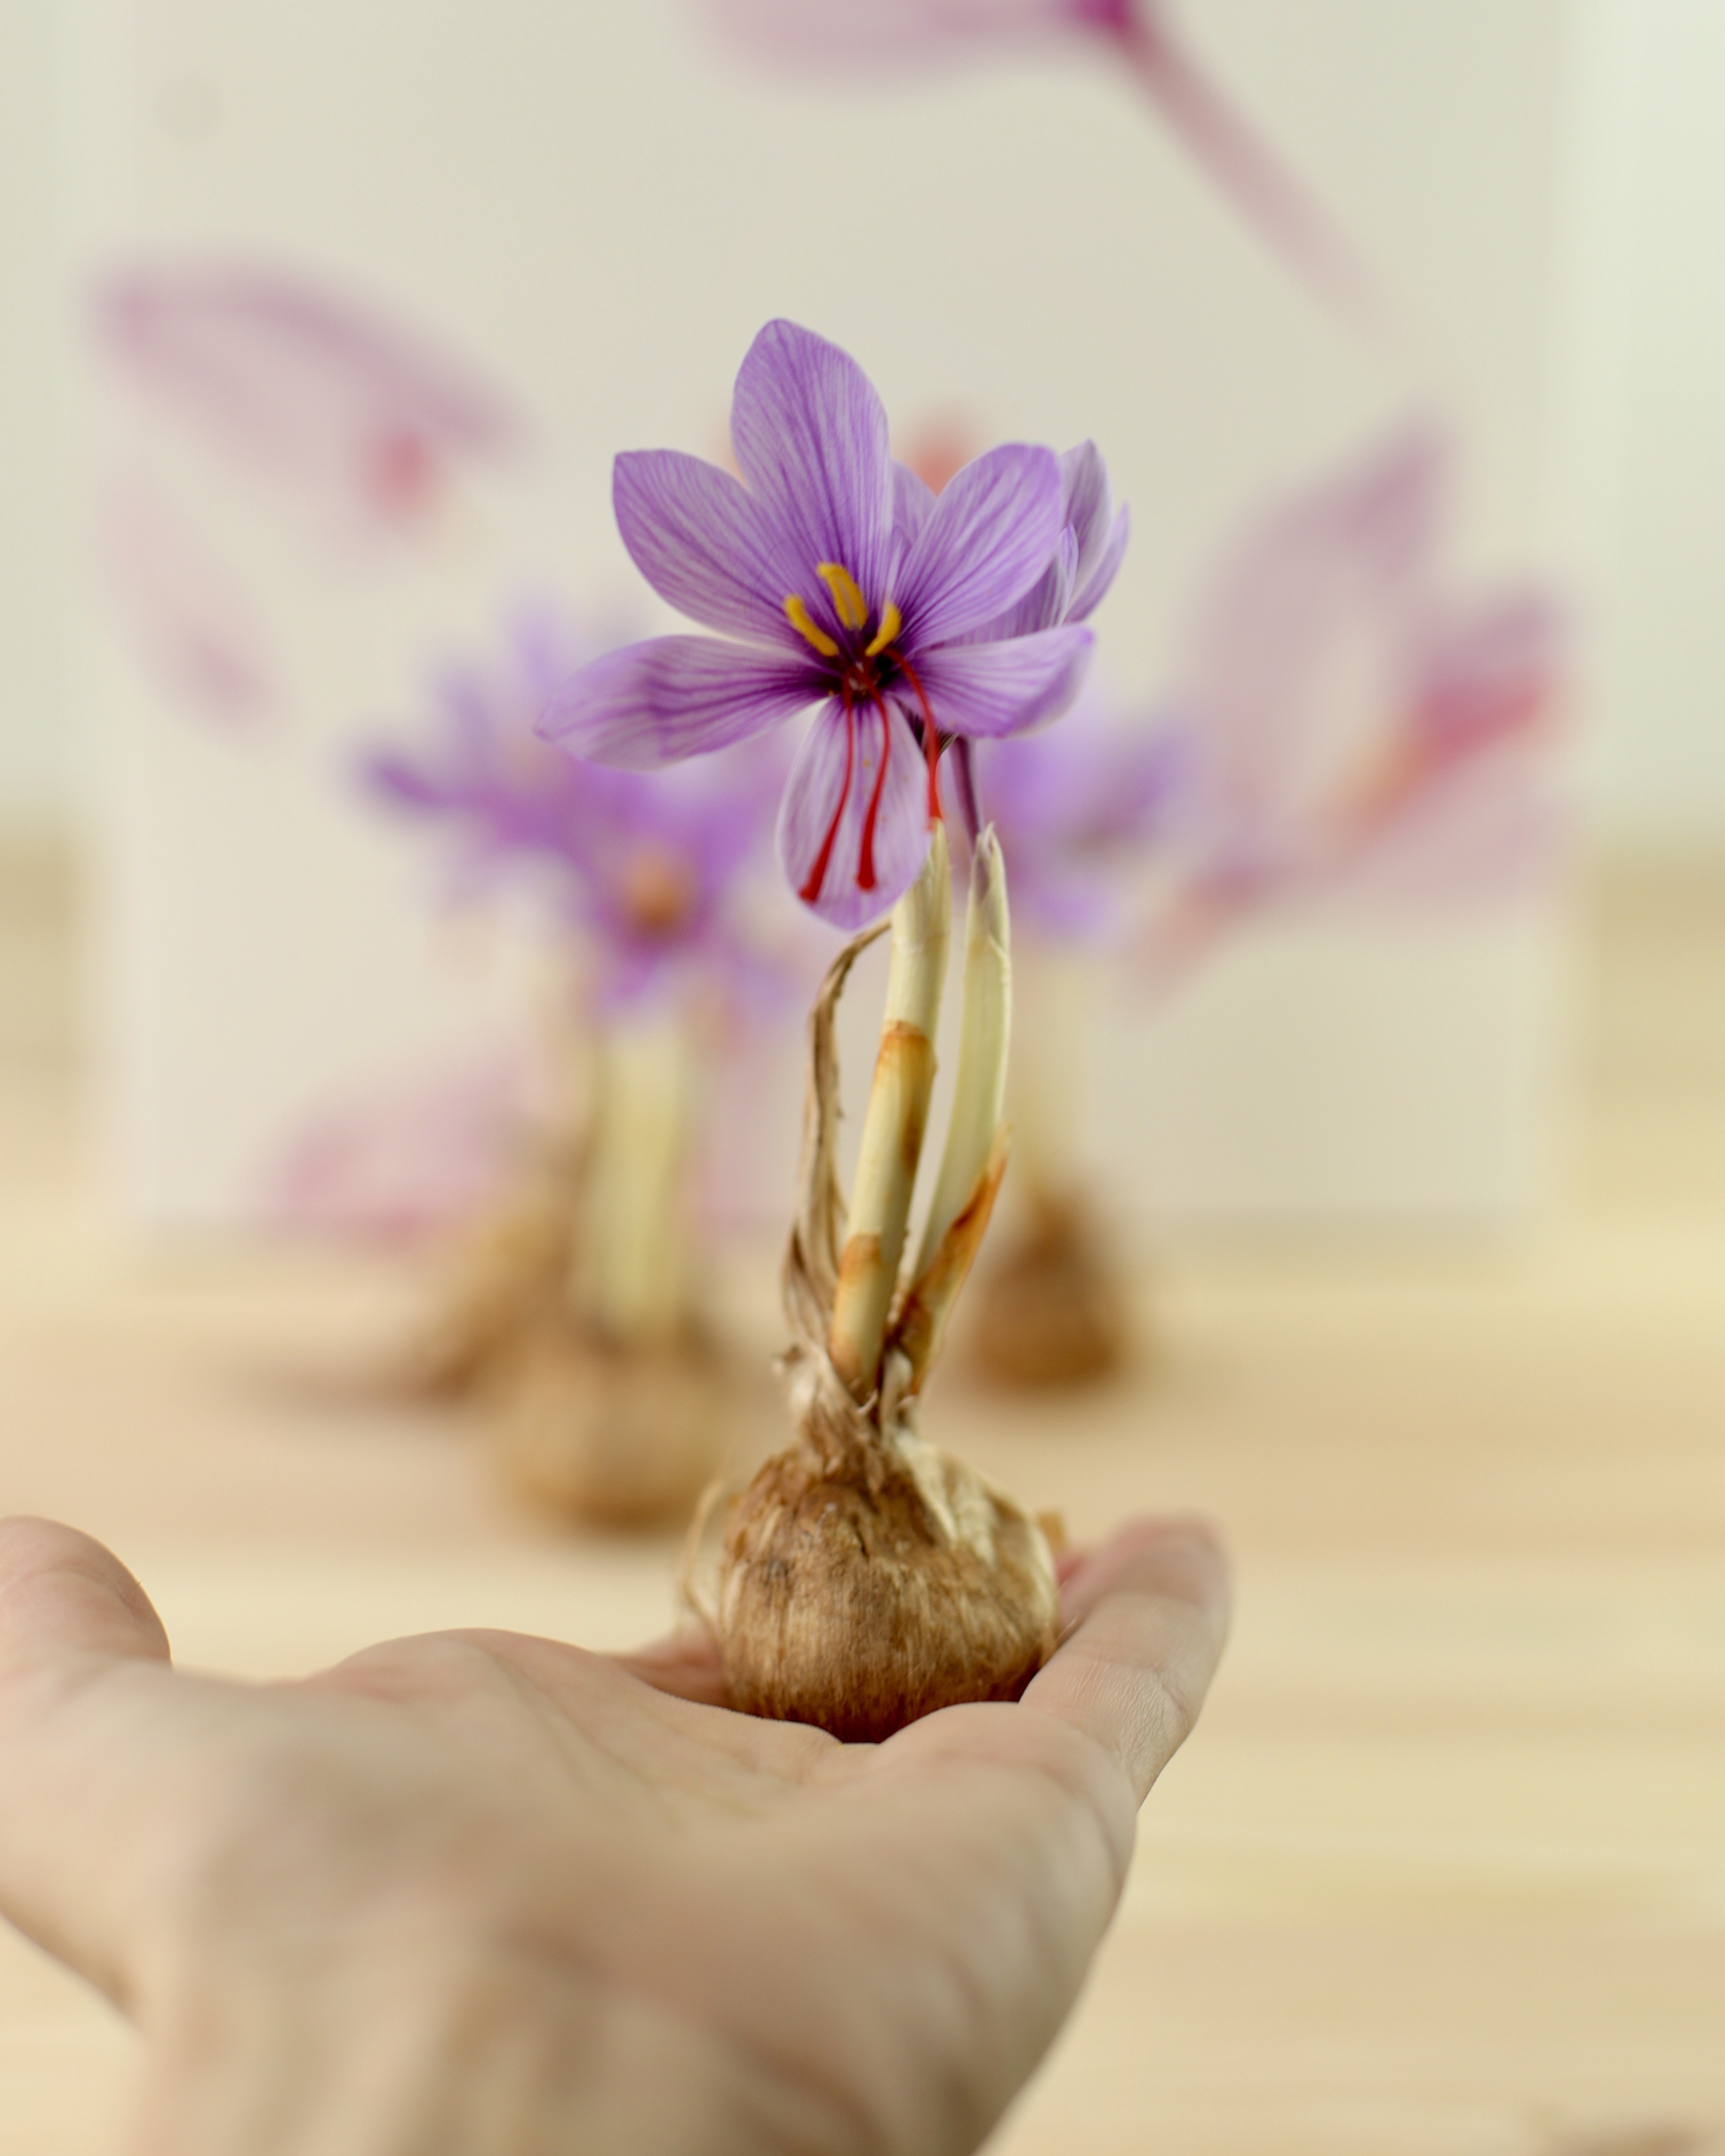 Bulbos de Azafrán cultivados en España Calibre "A" 12u. Crocus sativus - La Melguiza - Tienda online de Azafrán, productos y cosmética con azafrán.